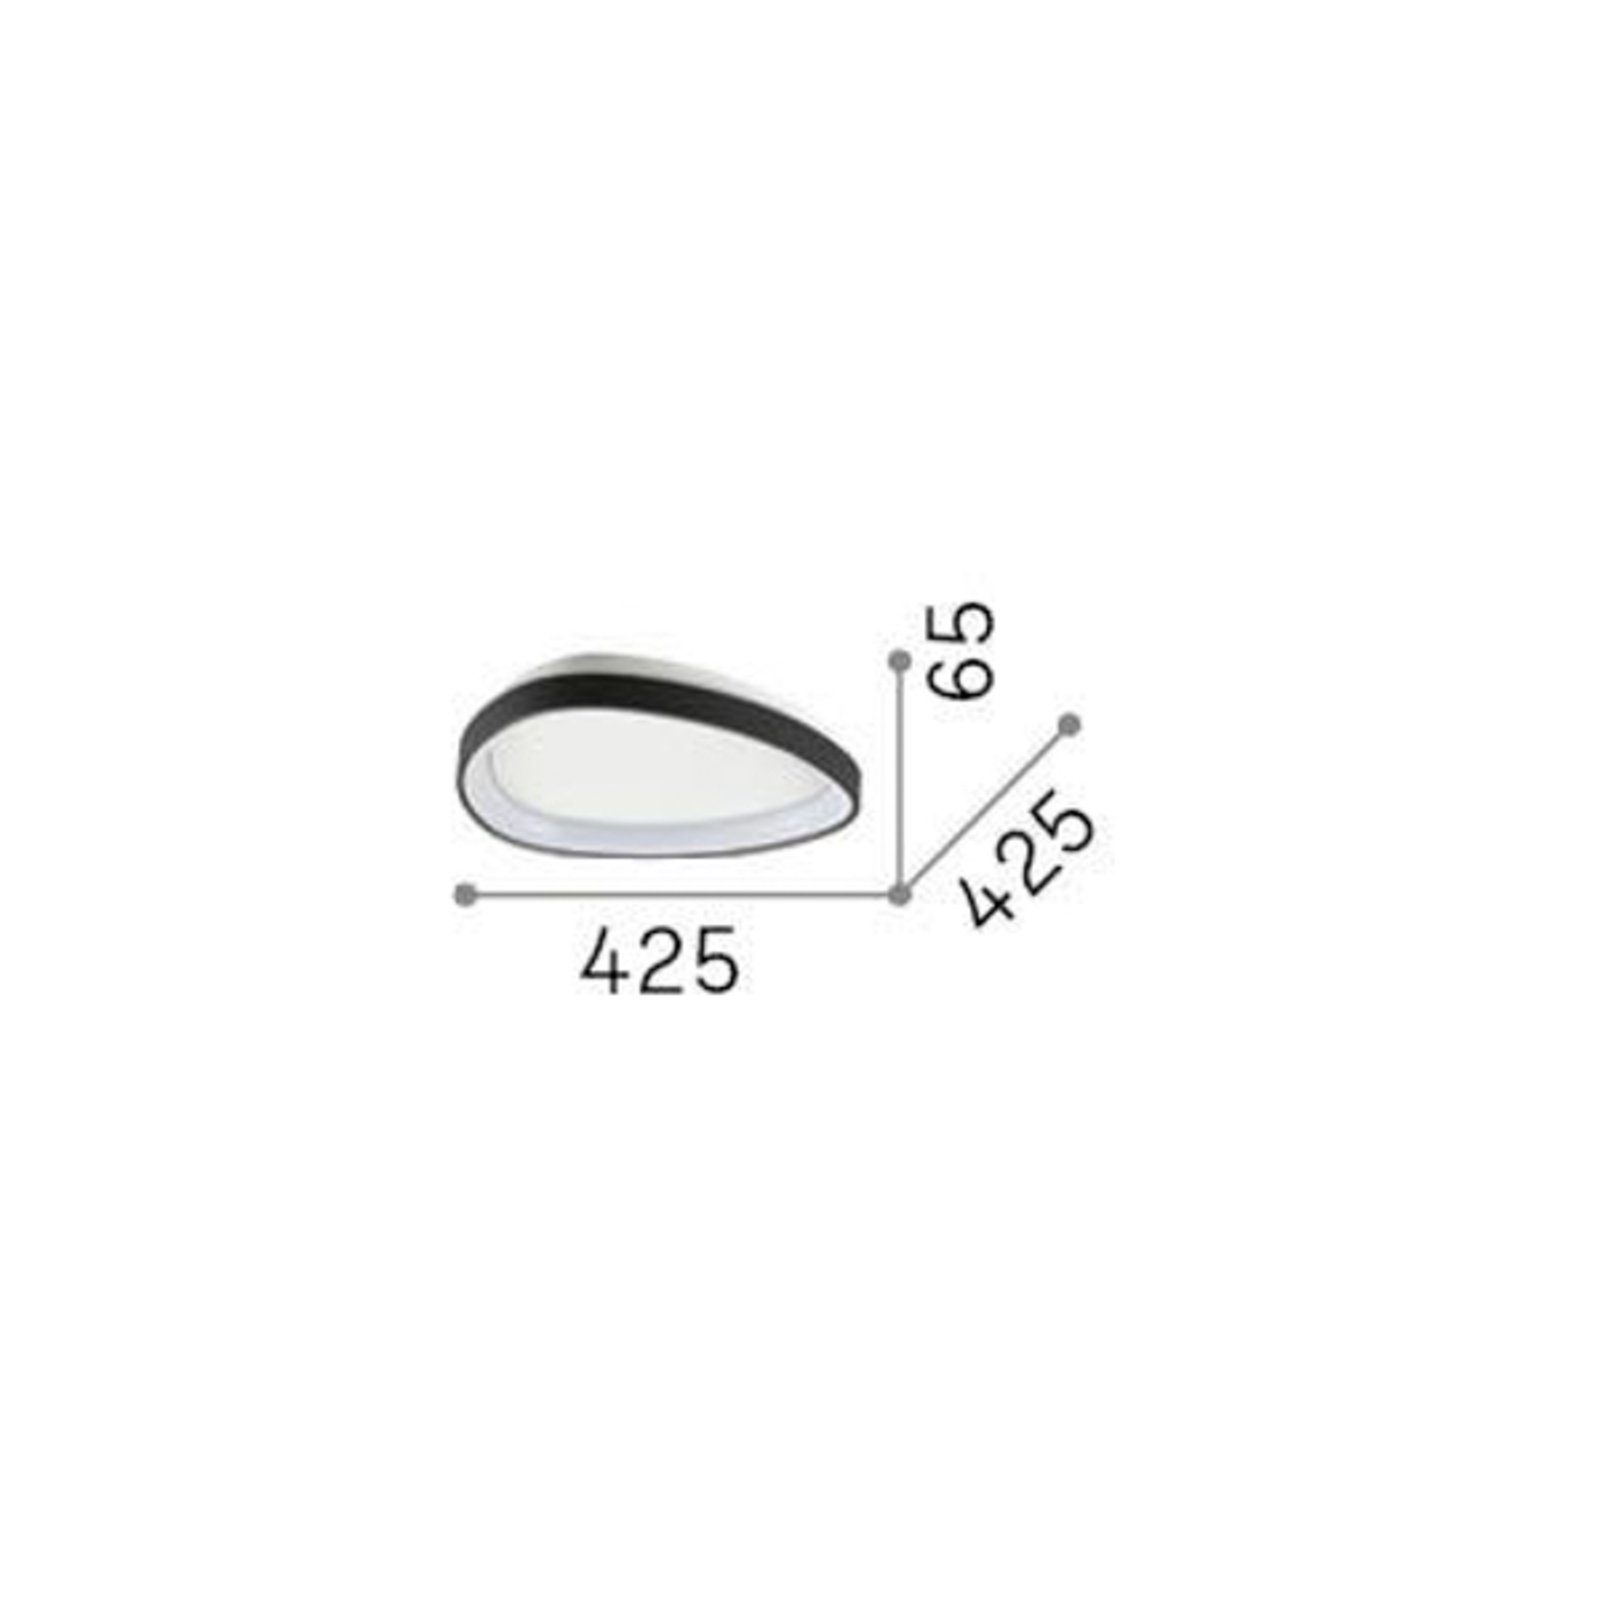 Ideal Lux taklampa Gemini mässingsfärgad 42,5 cm på/av